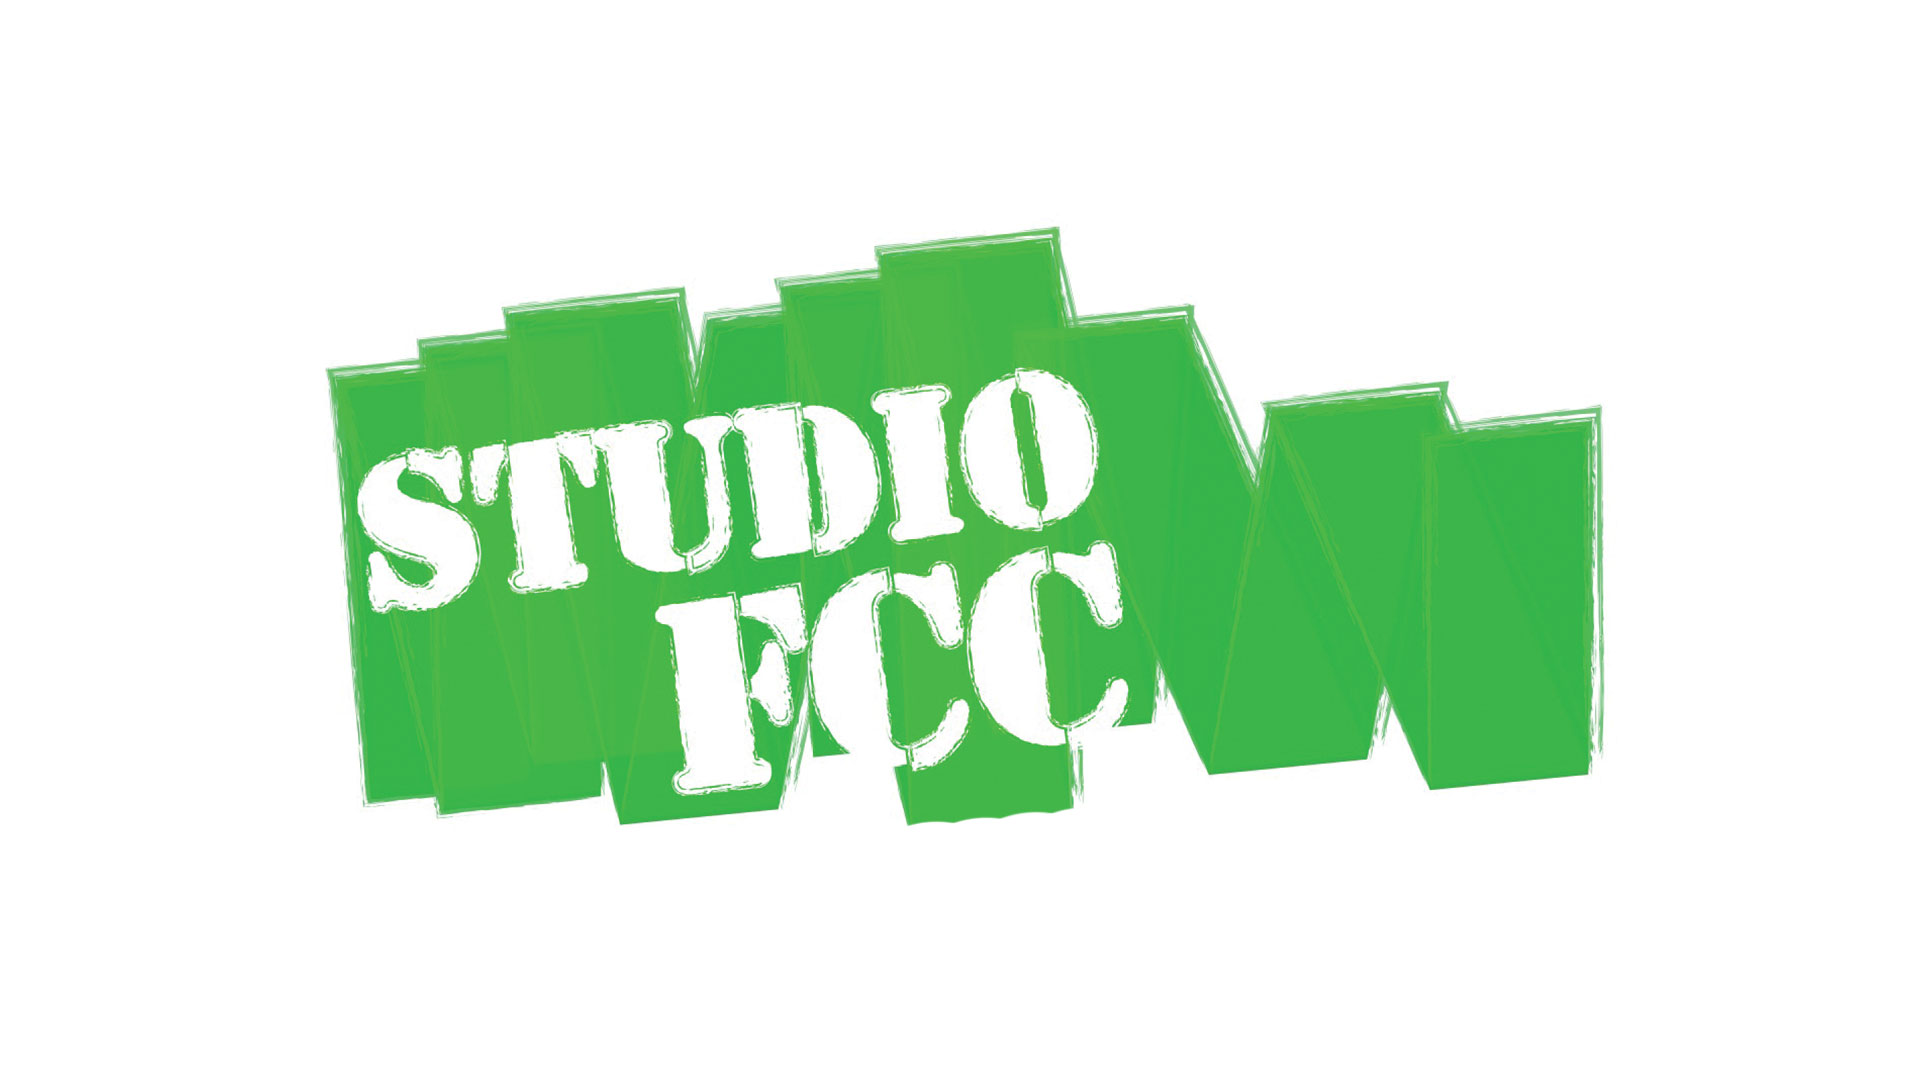 studio fcc